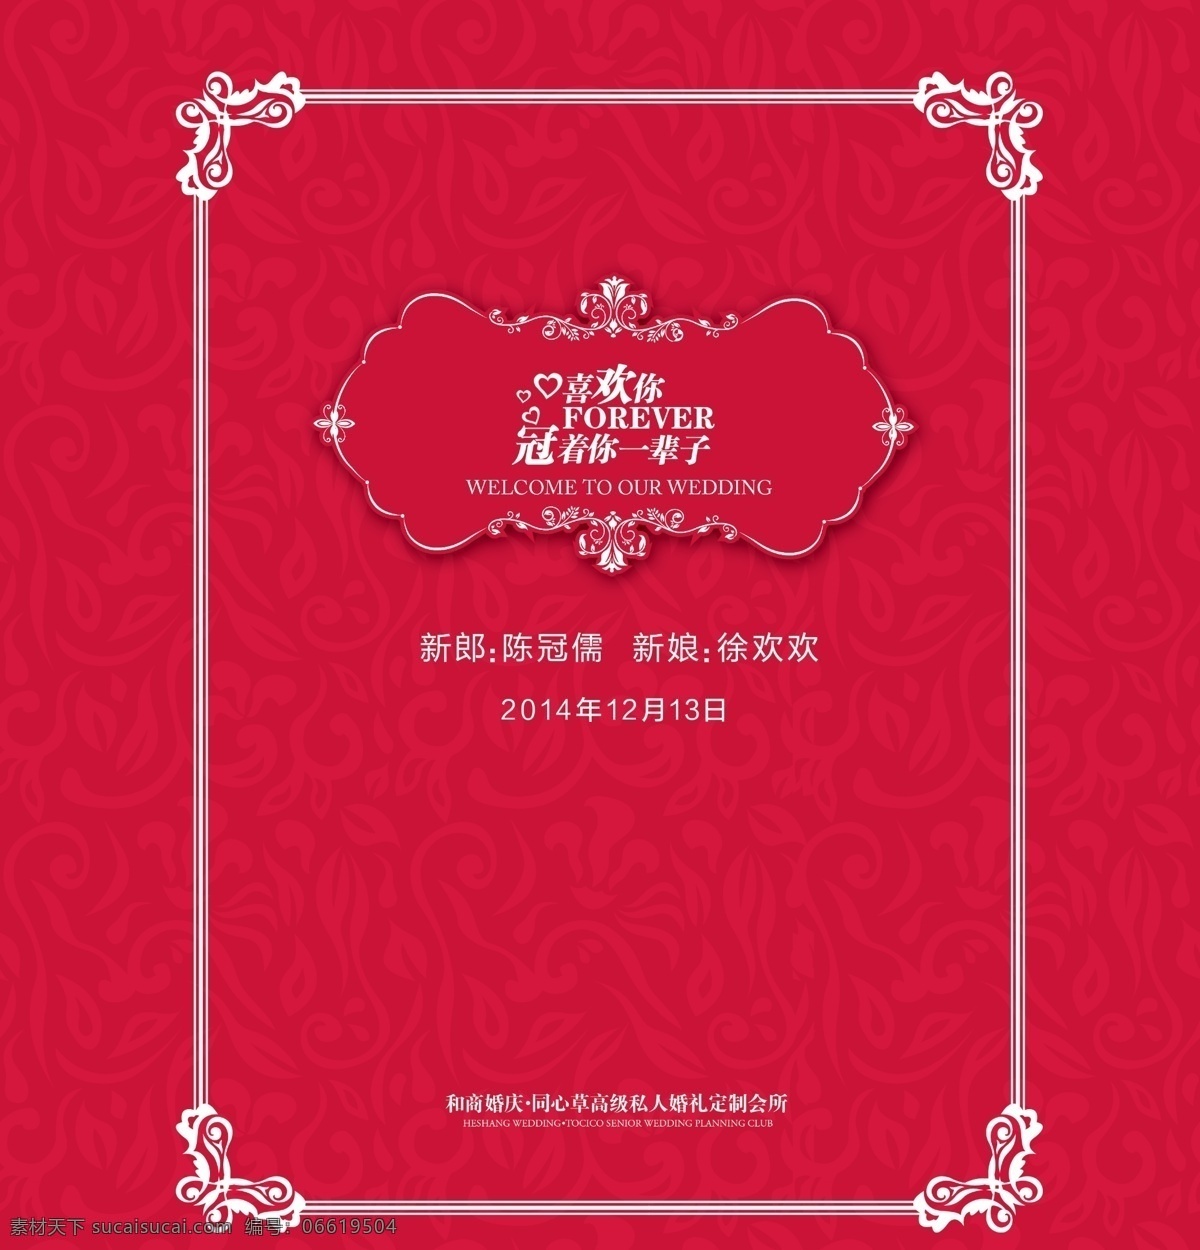 结婚 婚礼 背景 板 设计图 背景板 红色 欧式花纹